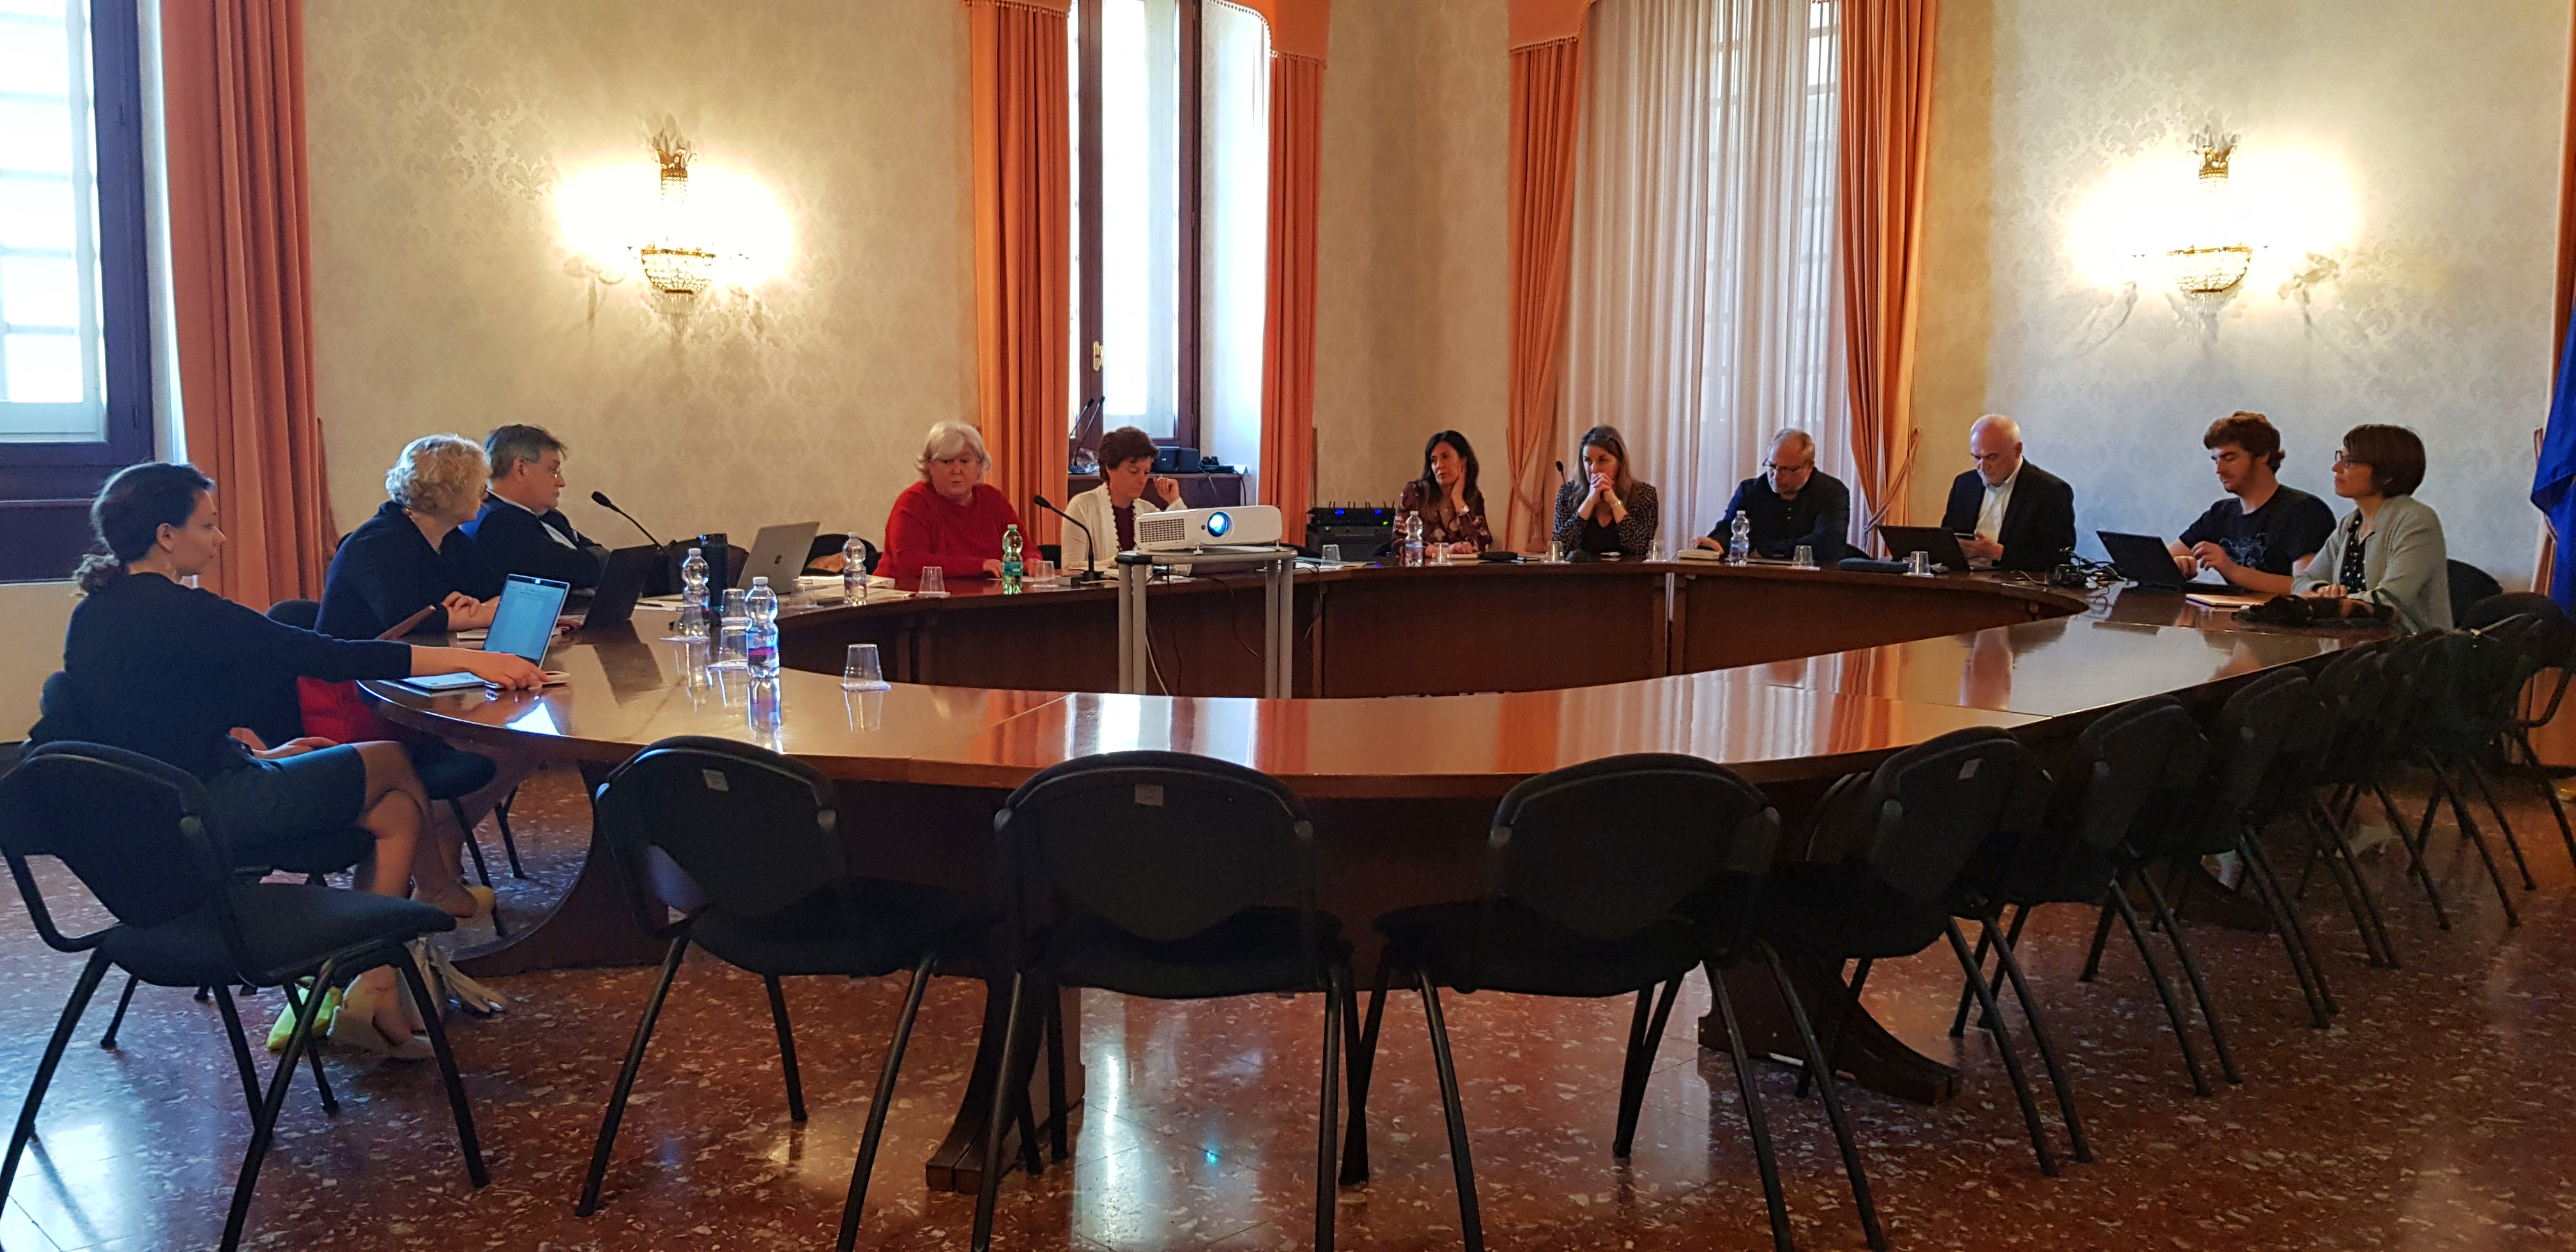 Riunione nella Sala Consiglio dell'Università di Cagliari